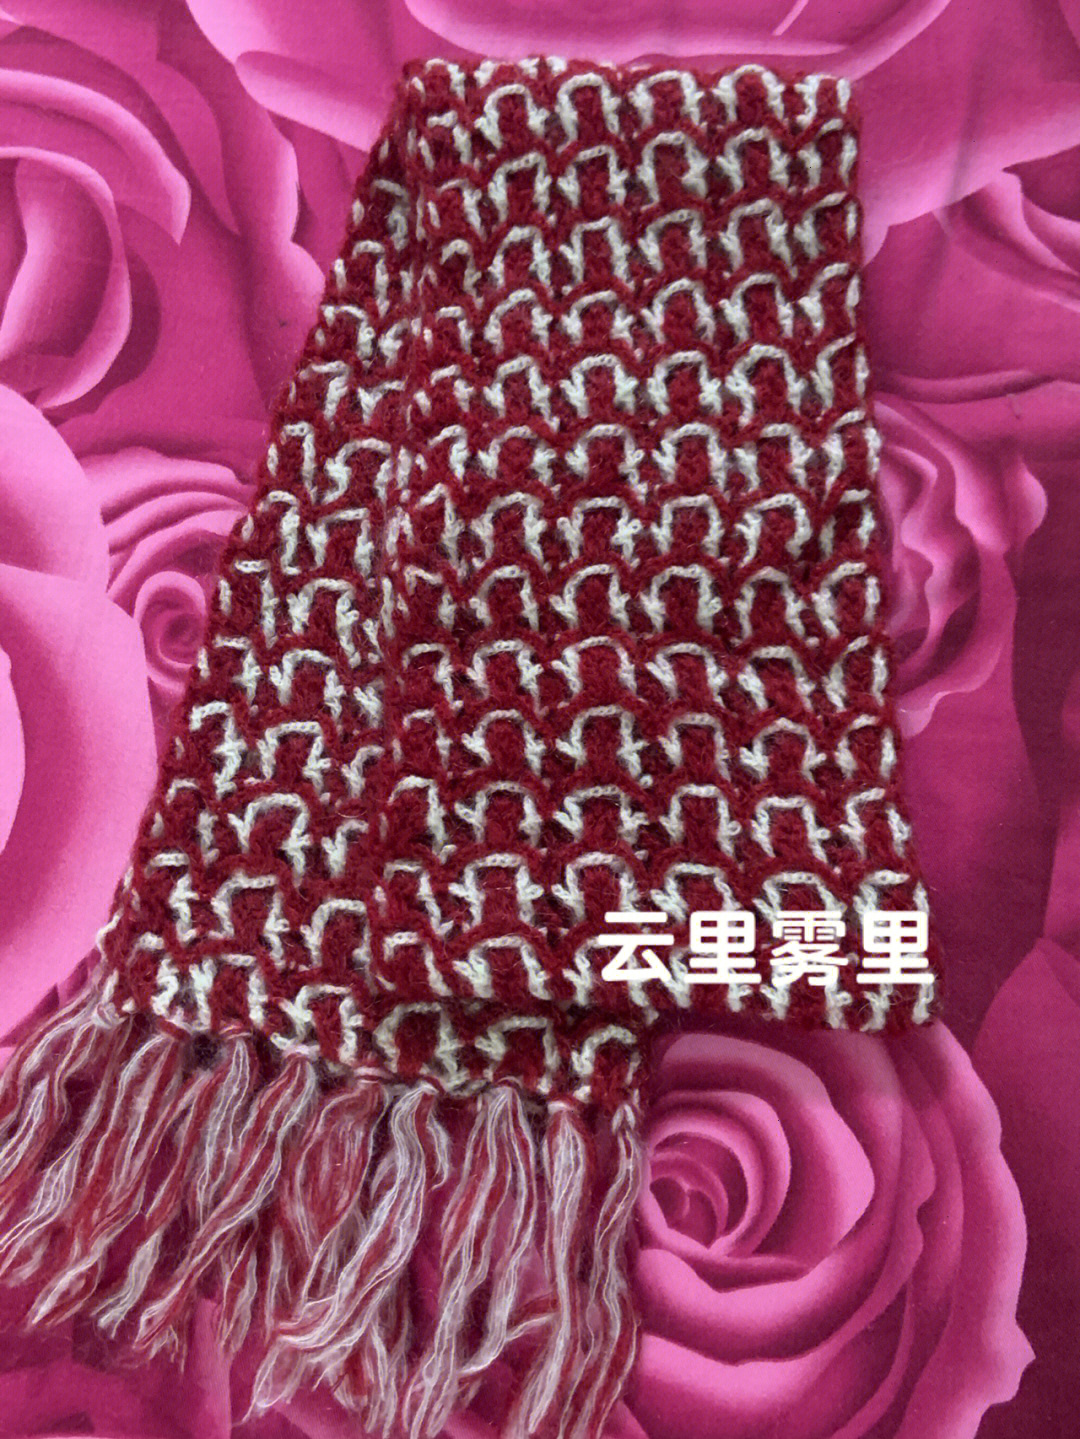 双色围巾的各种织法图片